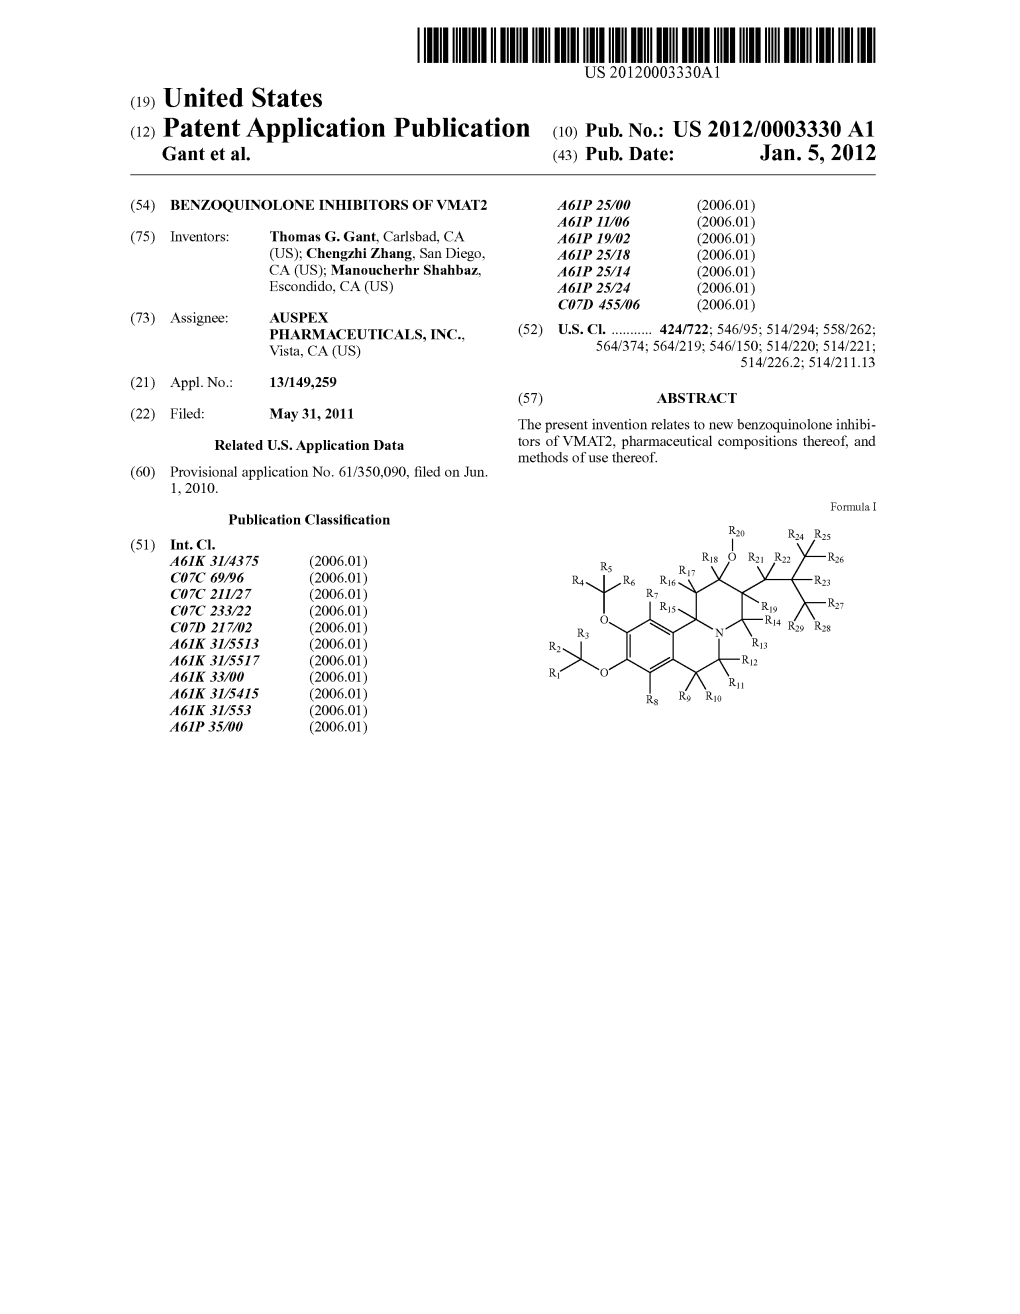 (12) Patent Application Publication (10) Pub. No.: US 2012/0003330 A1 Gant Et Al